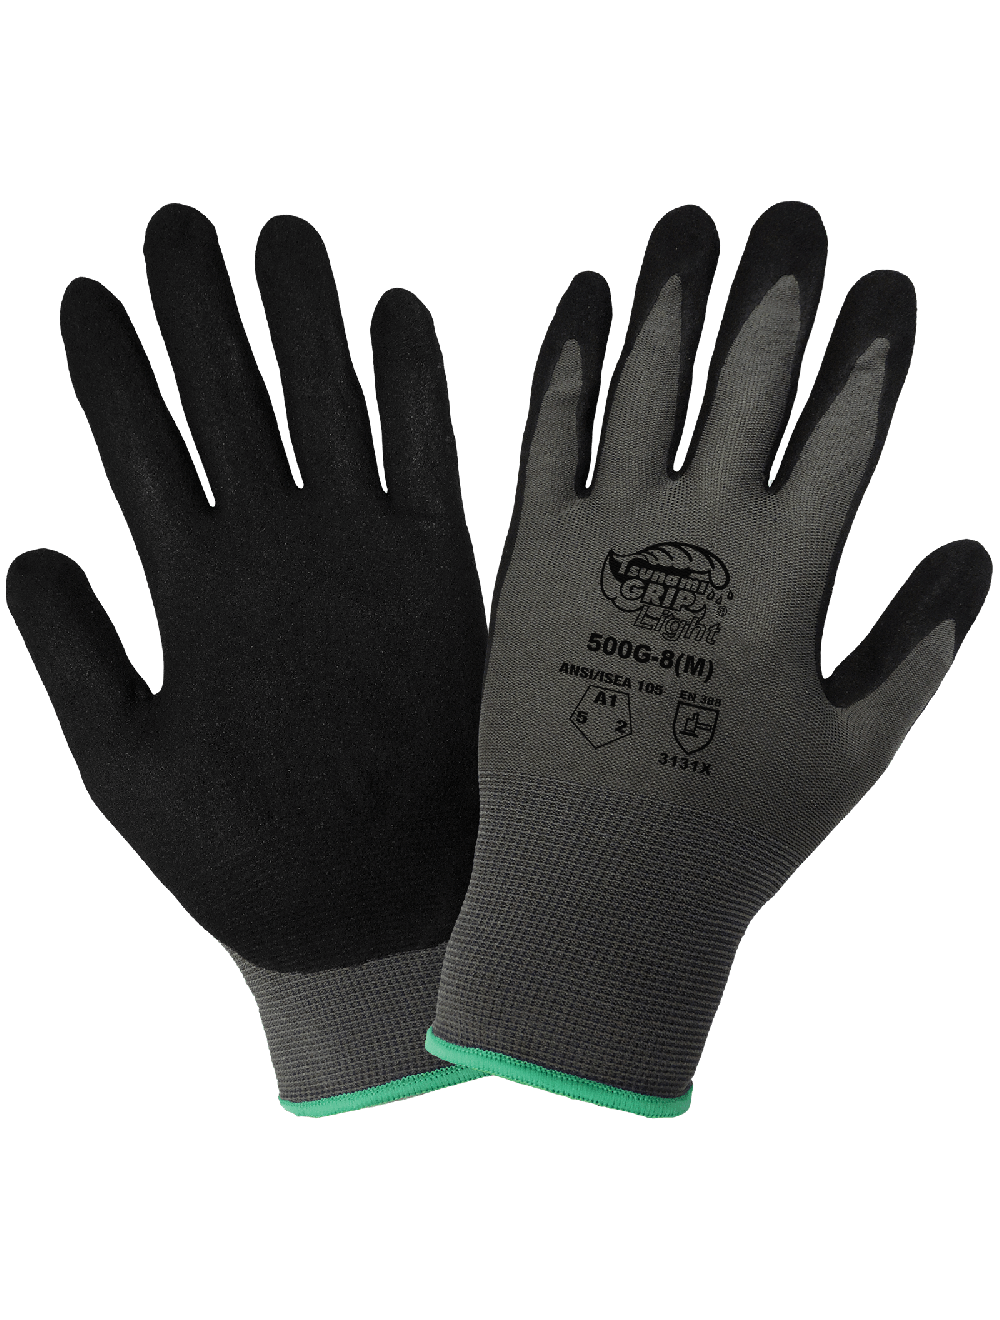 Get-A-Grip Nitrile Gloves, Black